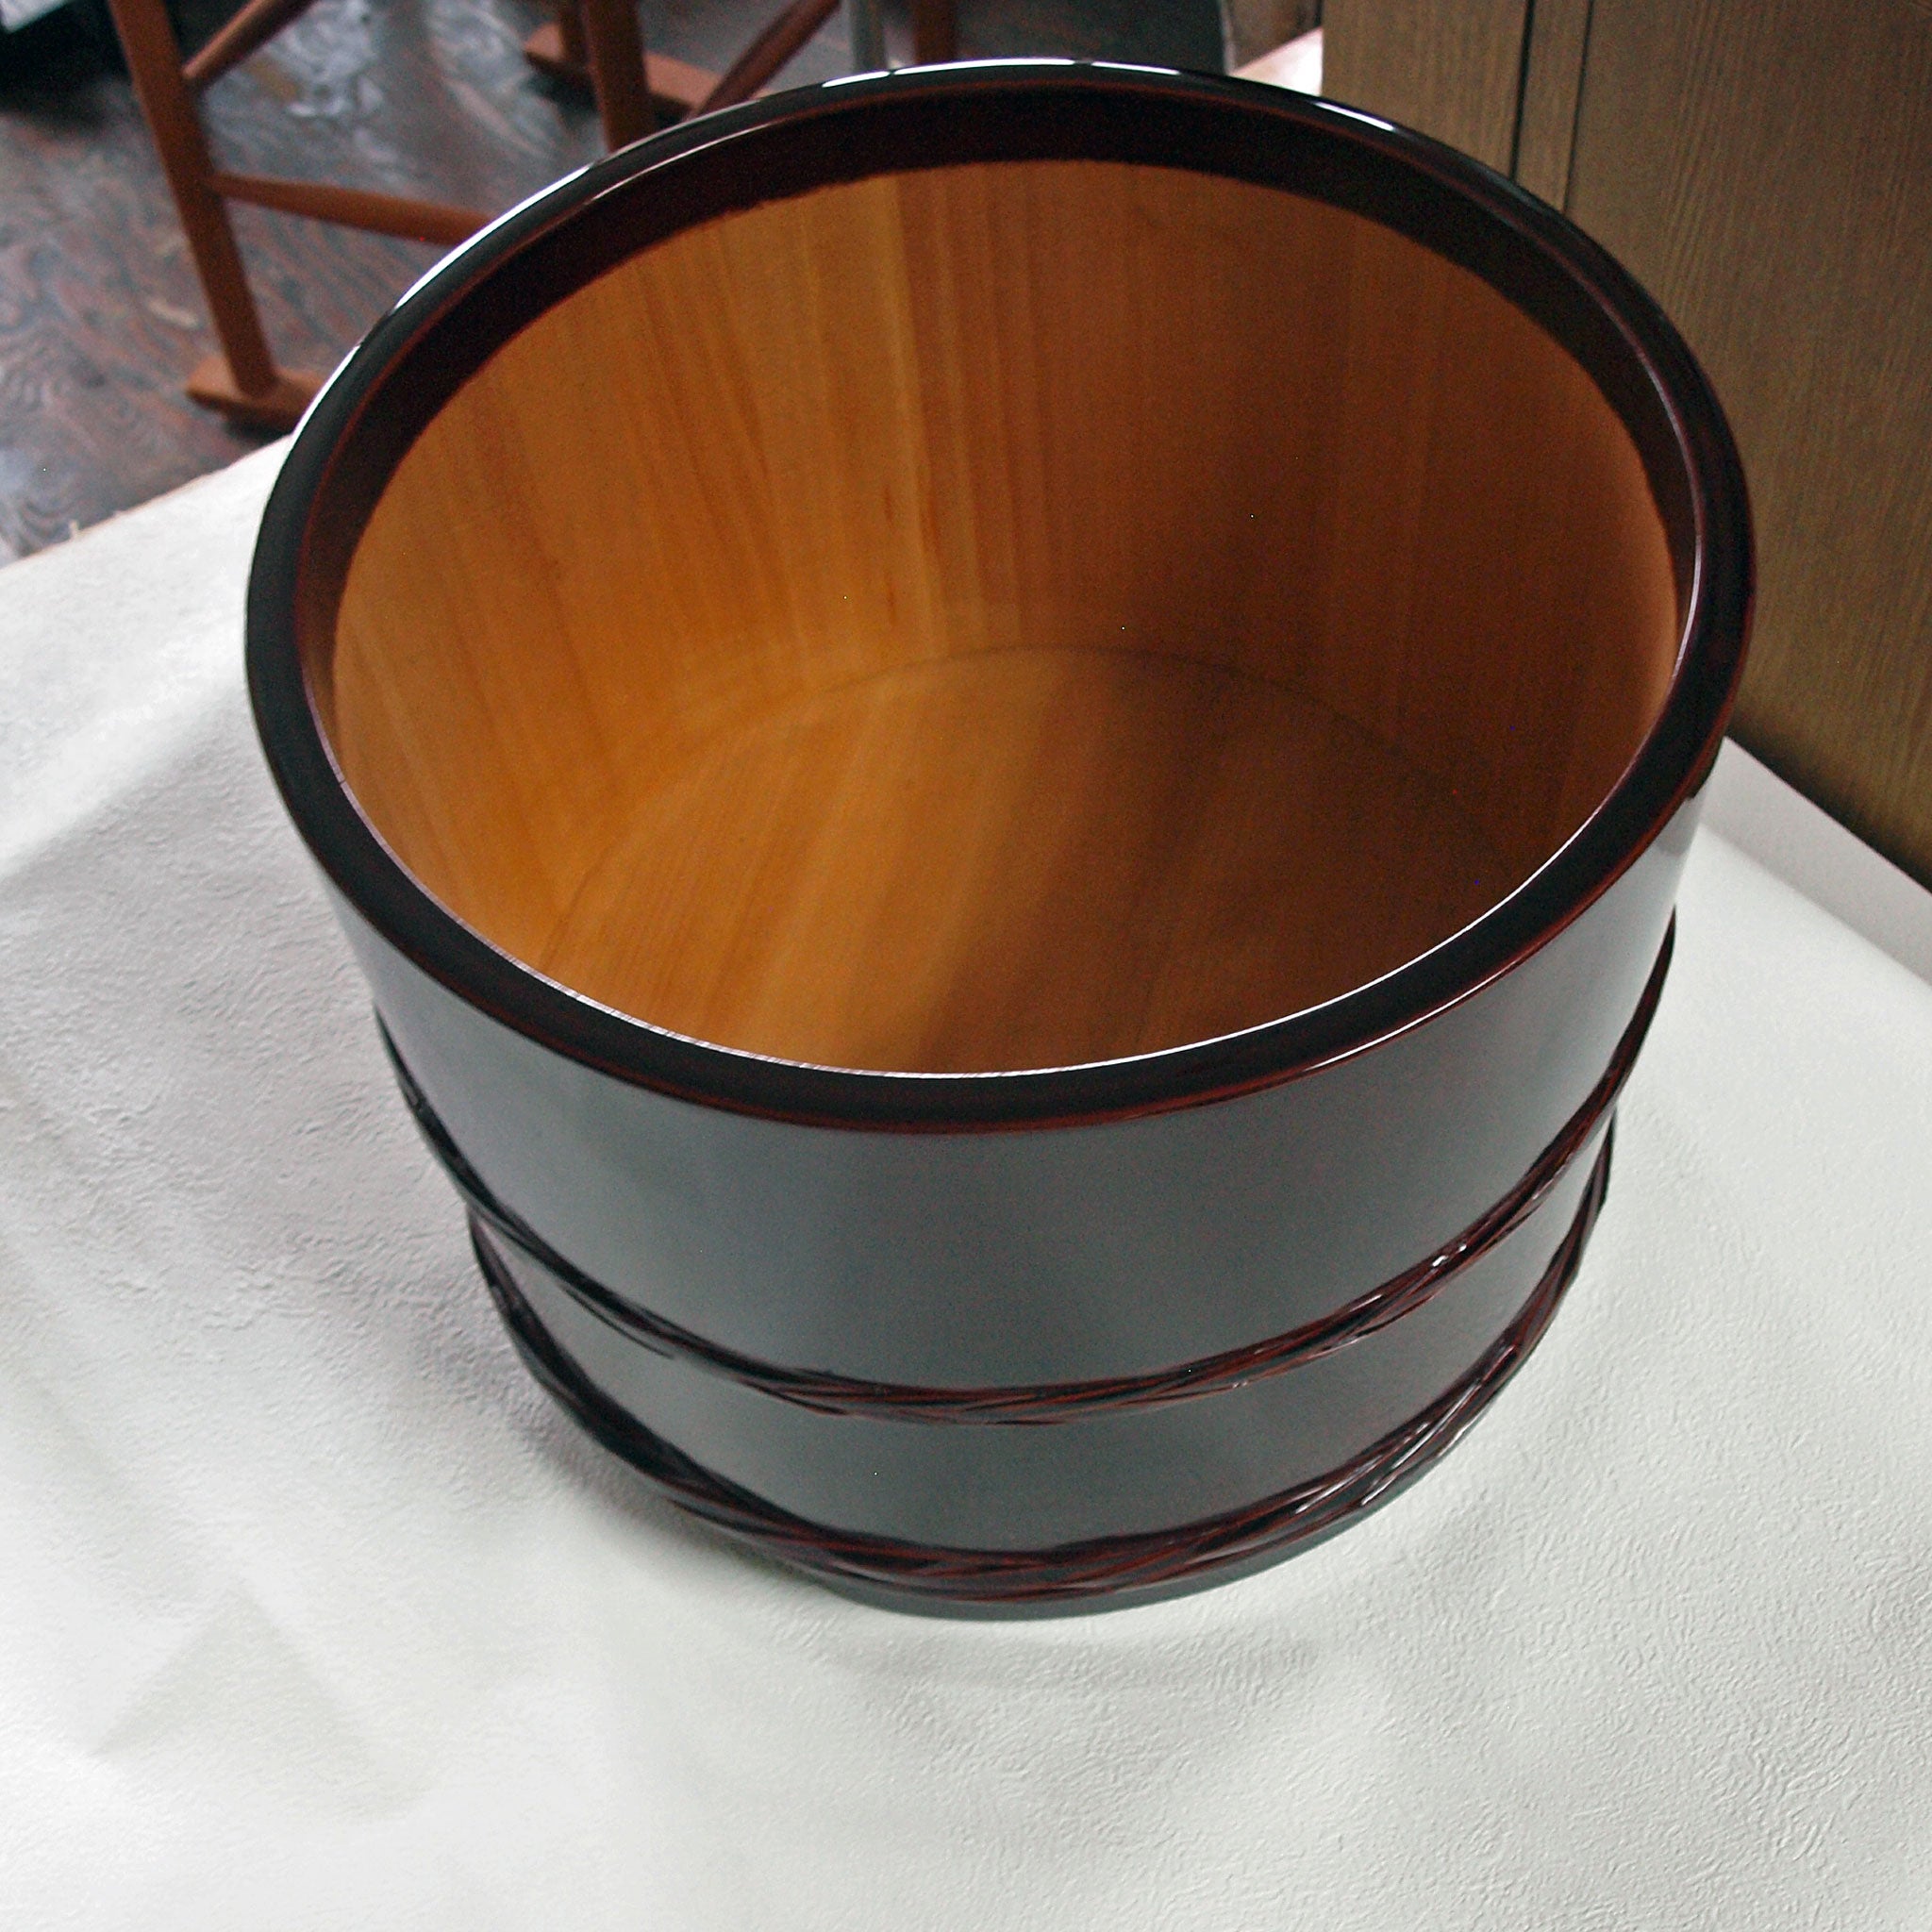 間違いない天然の漆桶です漆桶 漆桶花器 - 工芸品